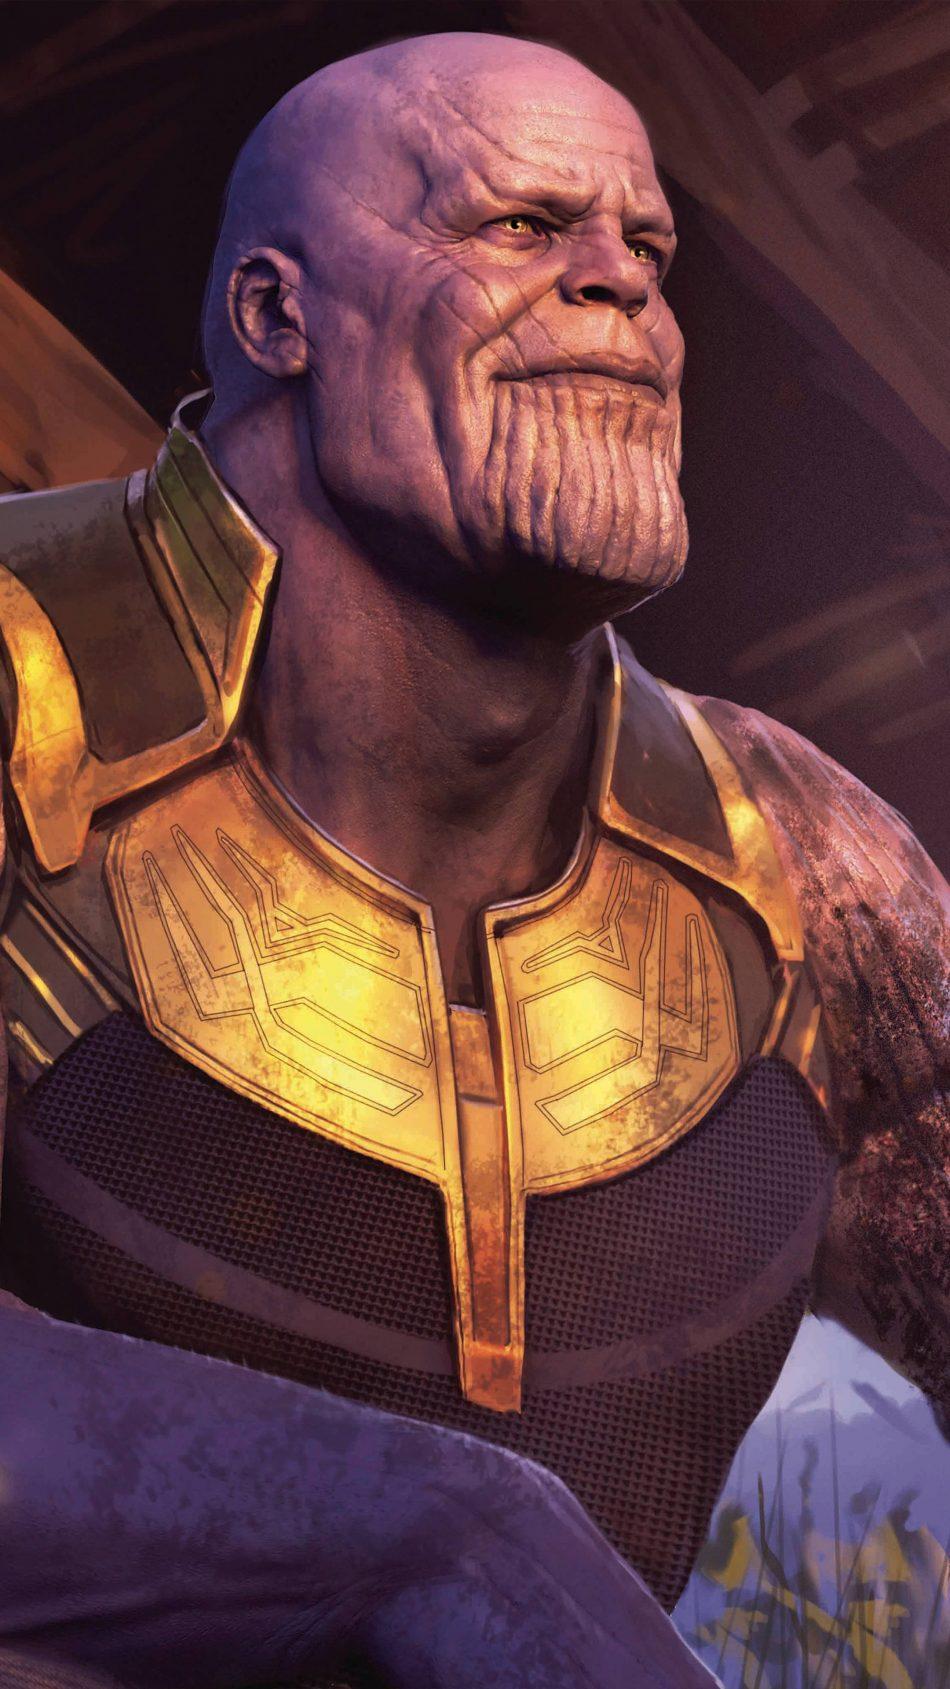 Thanos In Avengers Endgame Free 4K Ultra HD Mobile Wallpaper